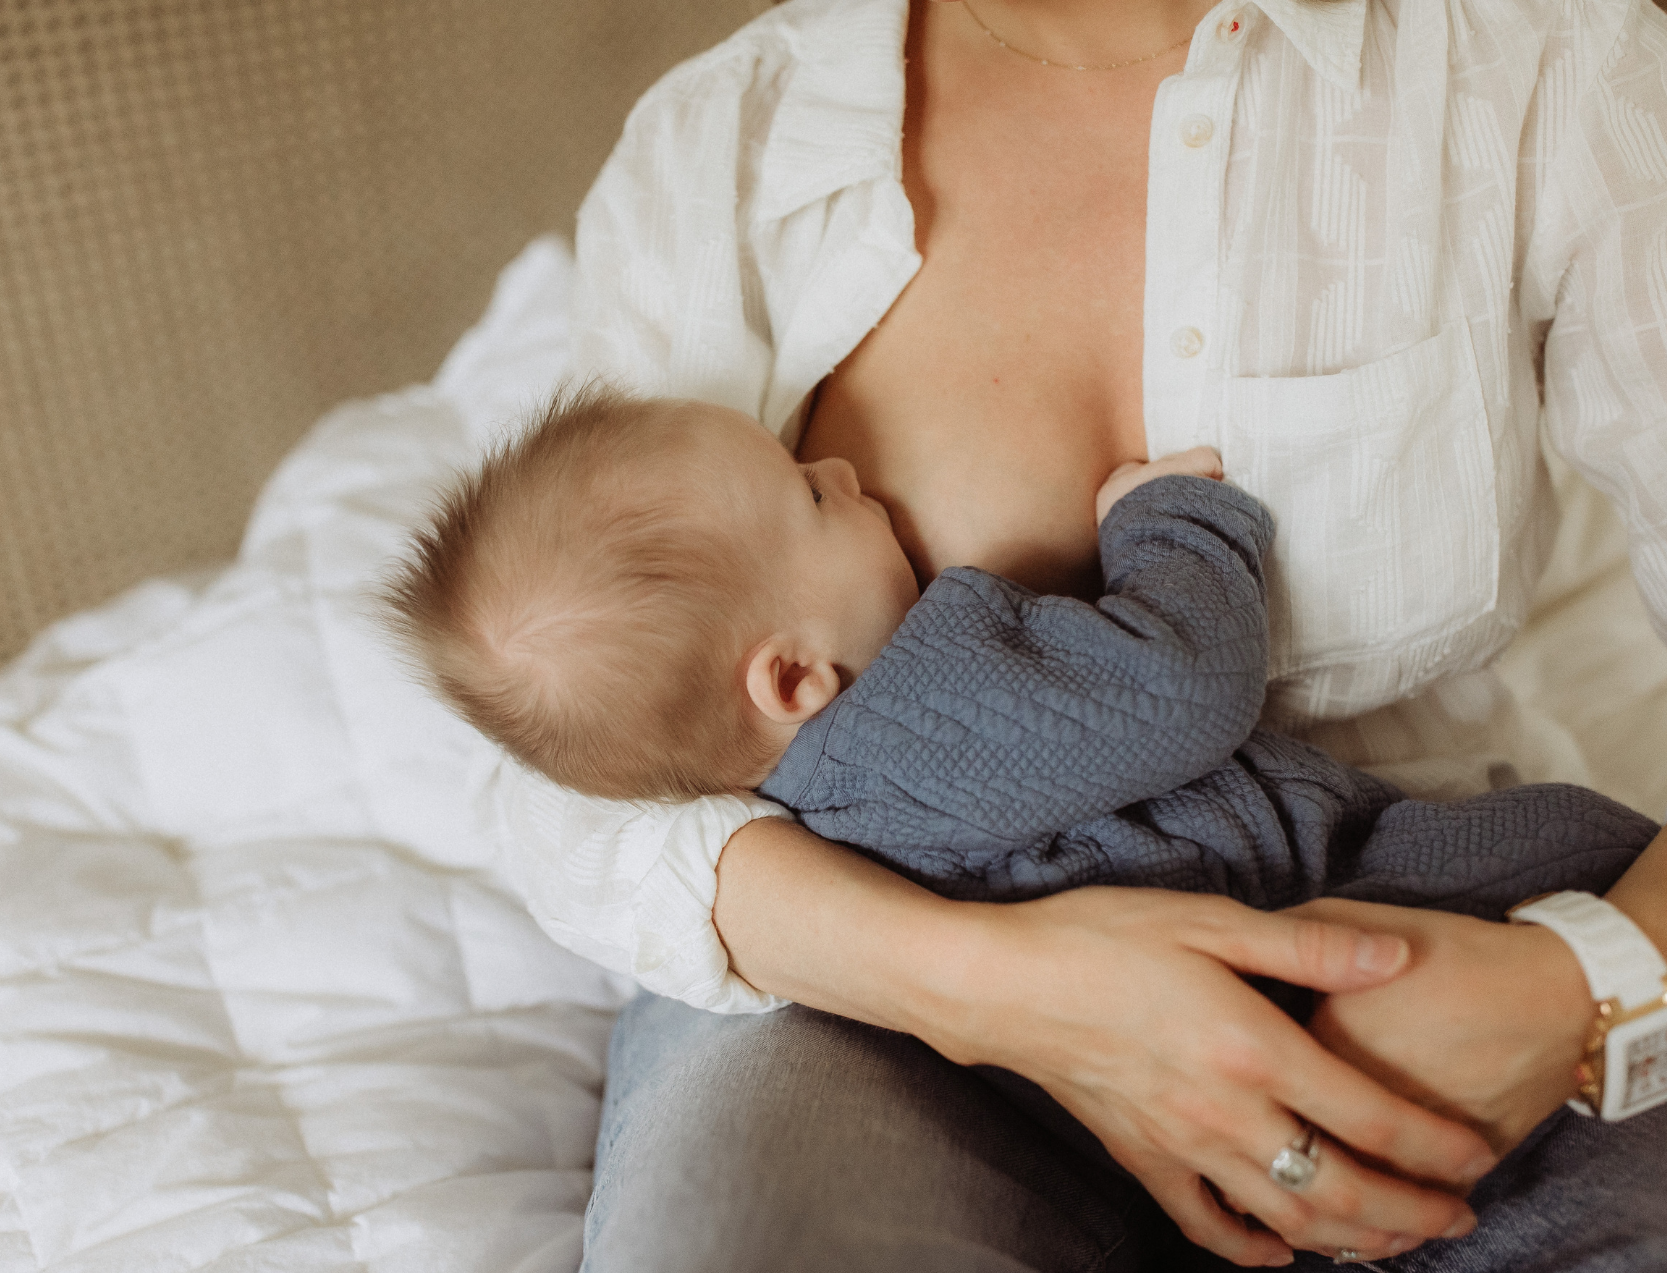 Semana Mundial de la lactancia materna